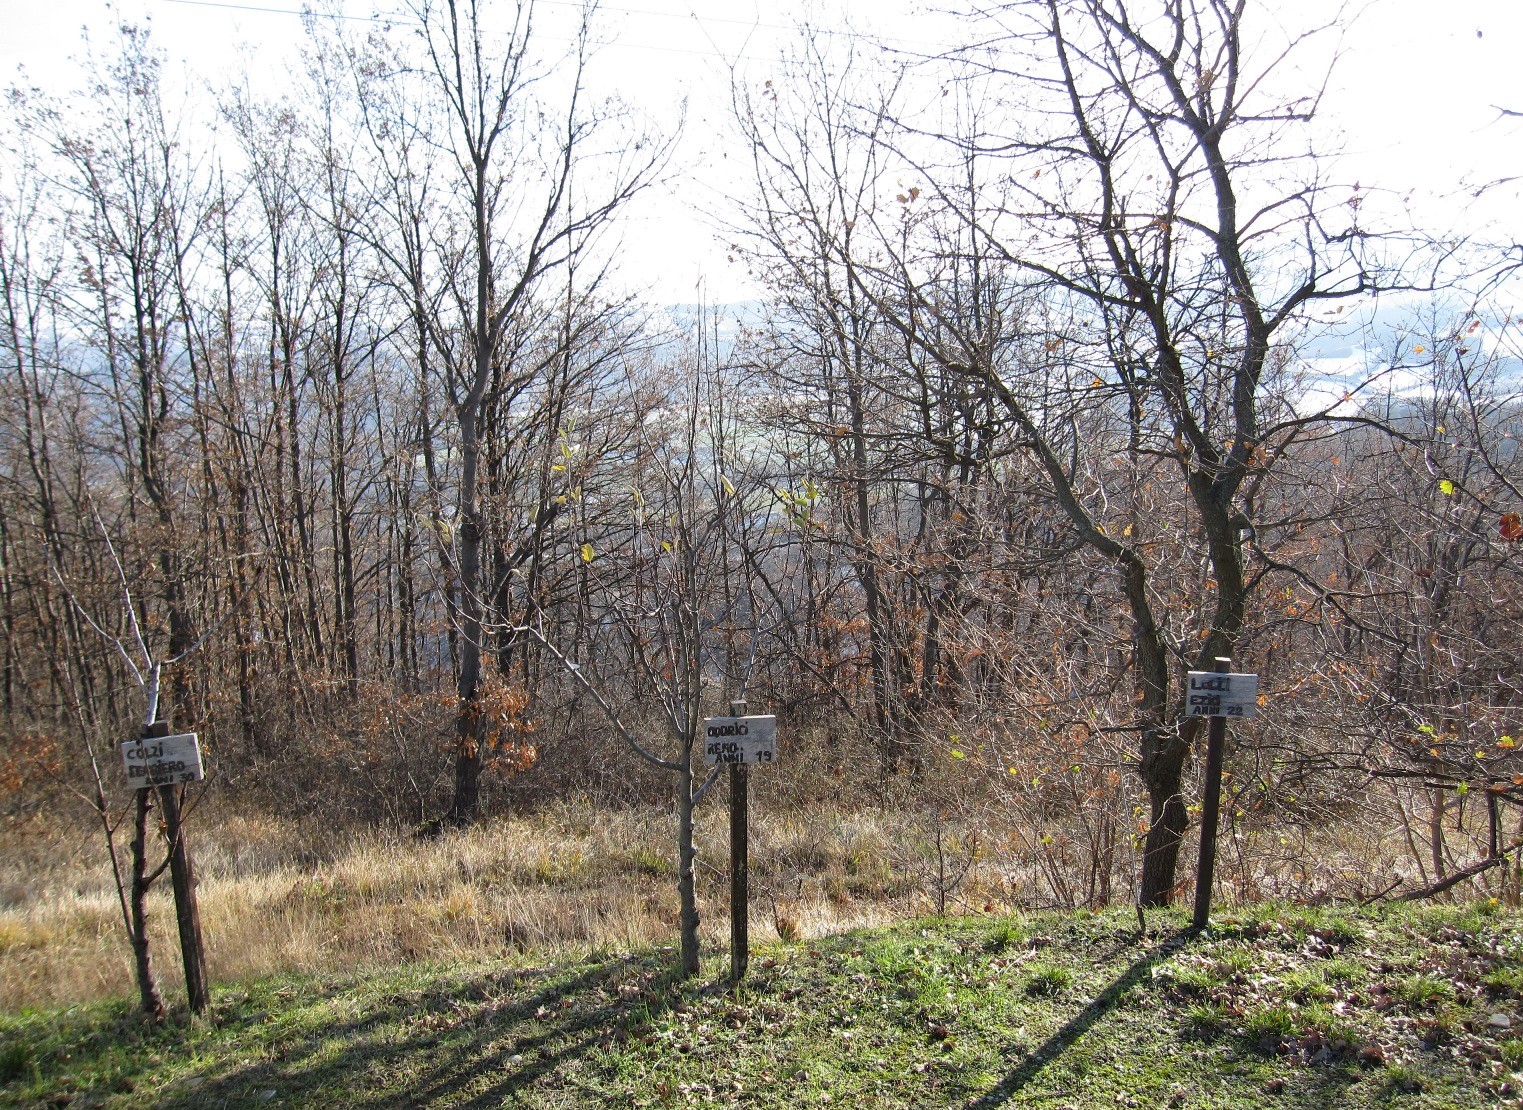 Alberi piantati in memoria degli impiccati nella strage dei Boschi di Ciano, a pochi metri dal luogo dei patiboli